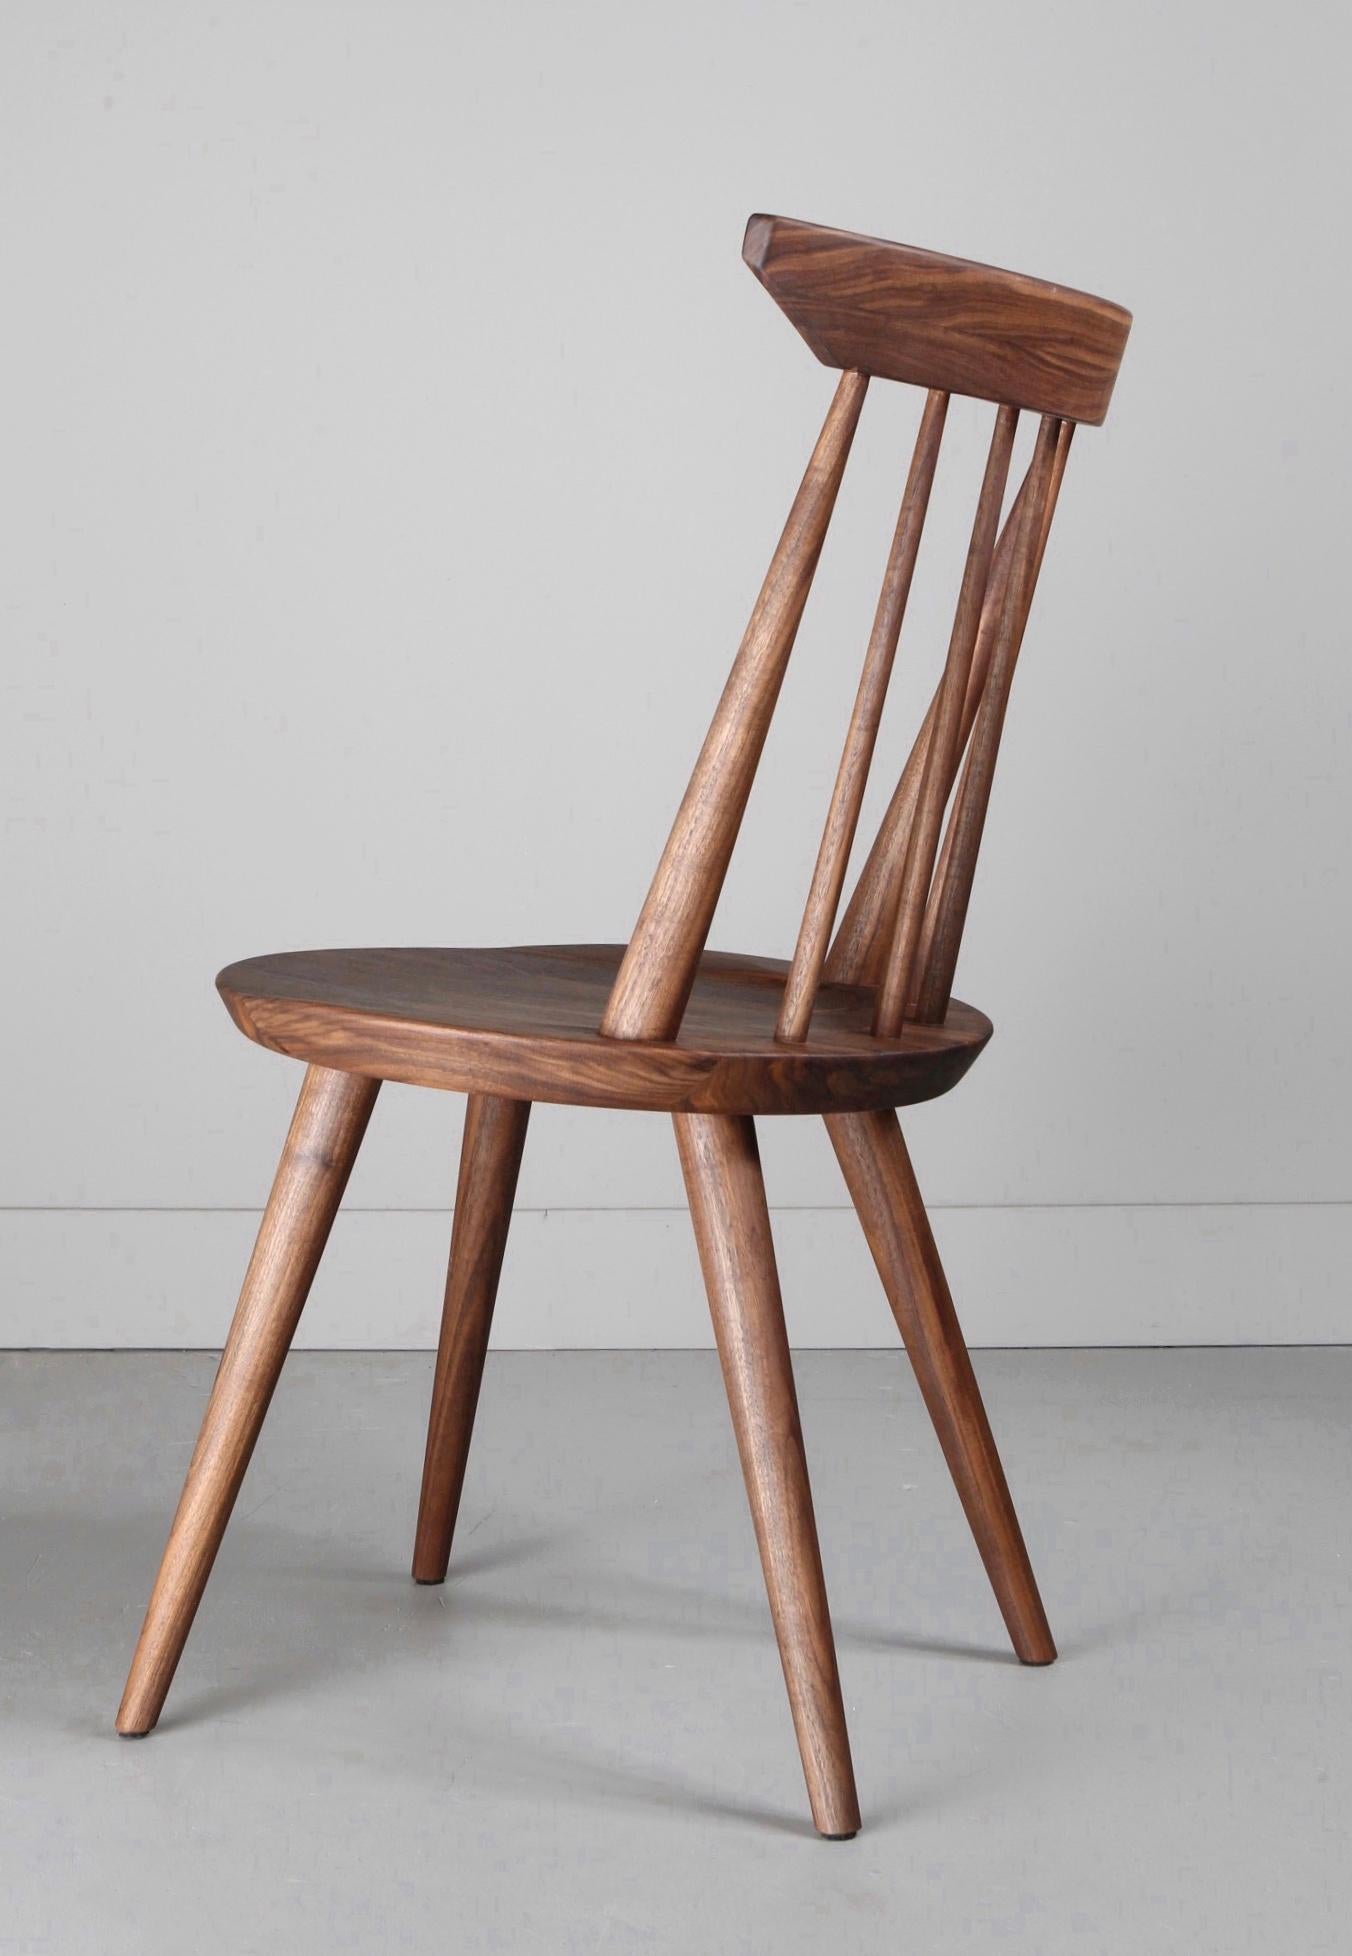 La chaise Vände est une version contemporaine de la chaise Windsor classique. Les fuseaux tournés à la main sont dotés d'un assemblage à tenon et mortaise pour plus de solidité et d'esthétique.

Le siège rond a été sculpté pour le confort. Le